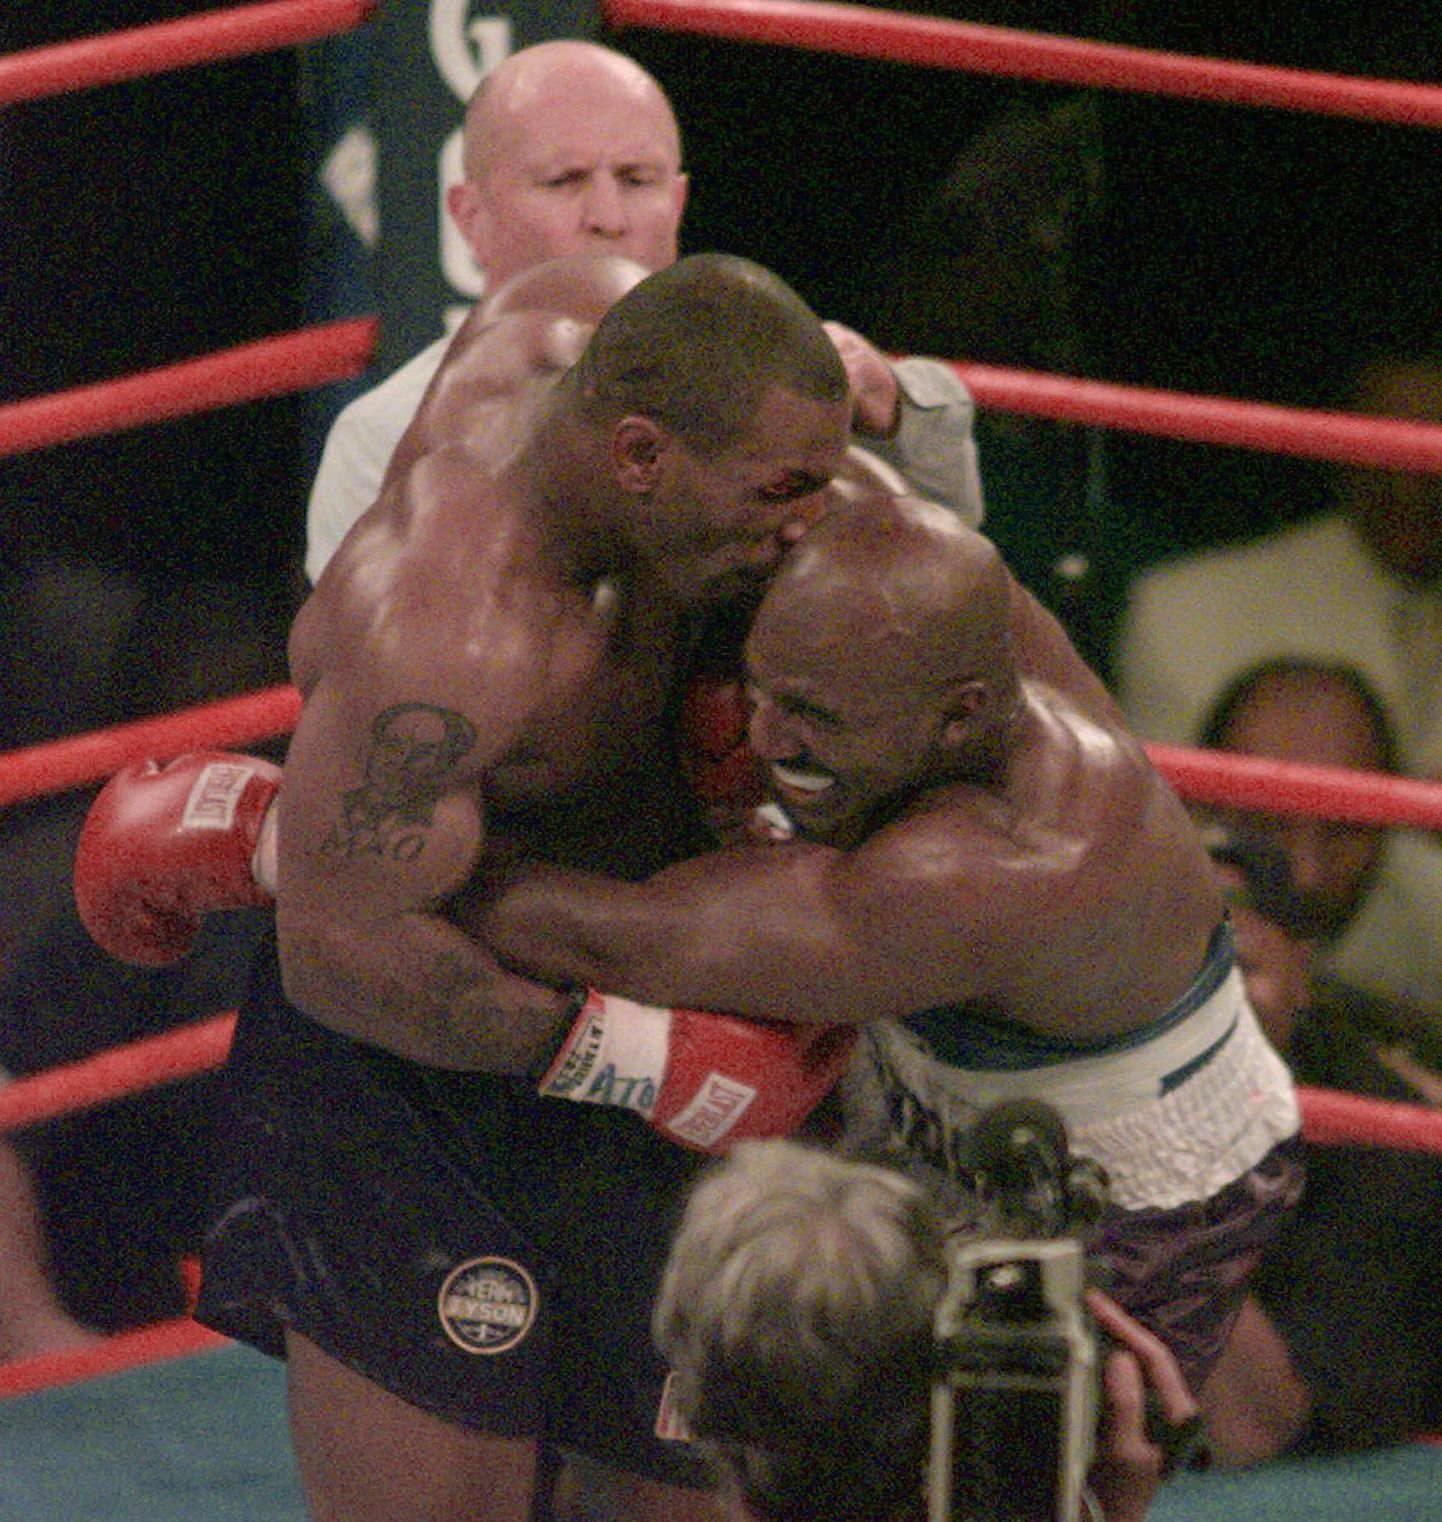 Pilt 1997. aastast, mil Mike Tyson (vasakul) hammustab Evander Holyfieldi kõrvast tüki välja.